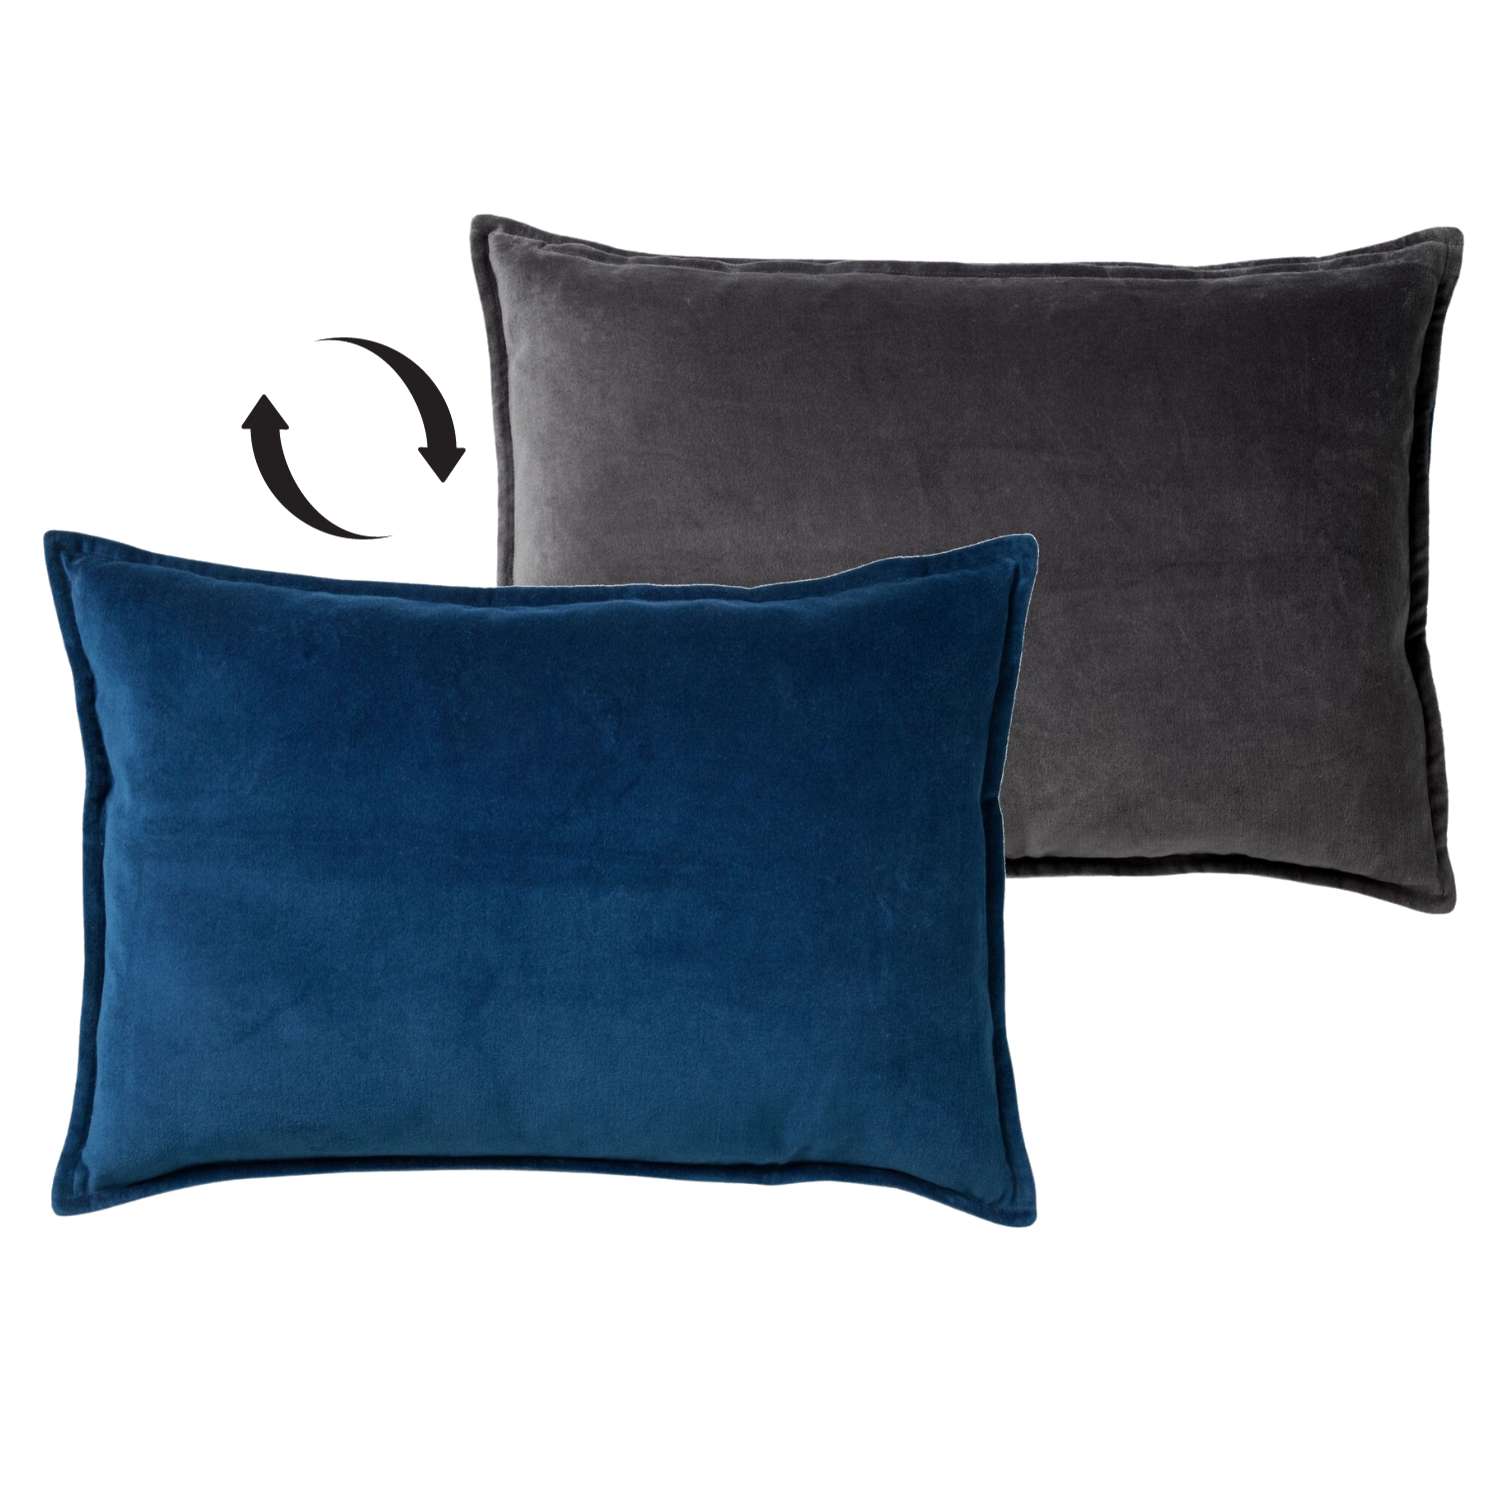 FAY - Kussenhoes 40x60 cm - velvet met 2 kleuren - Insignia Blue + Charcoal Gray - blauw en antraciet